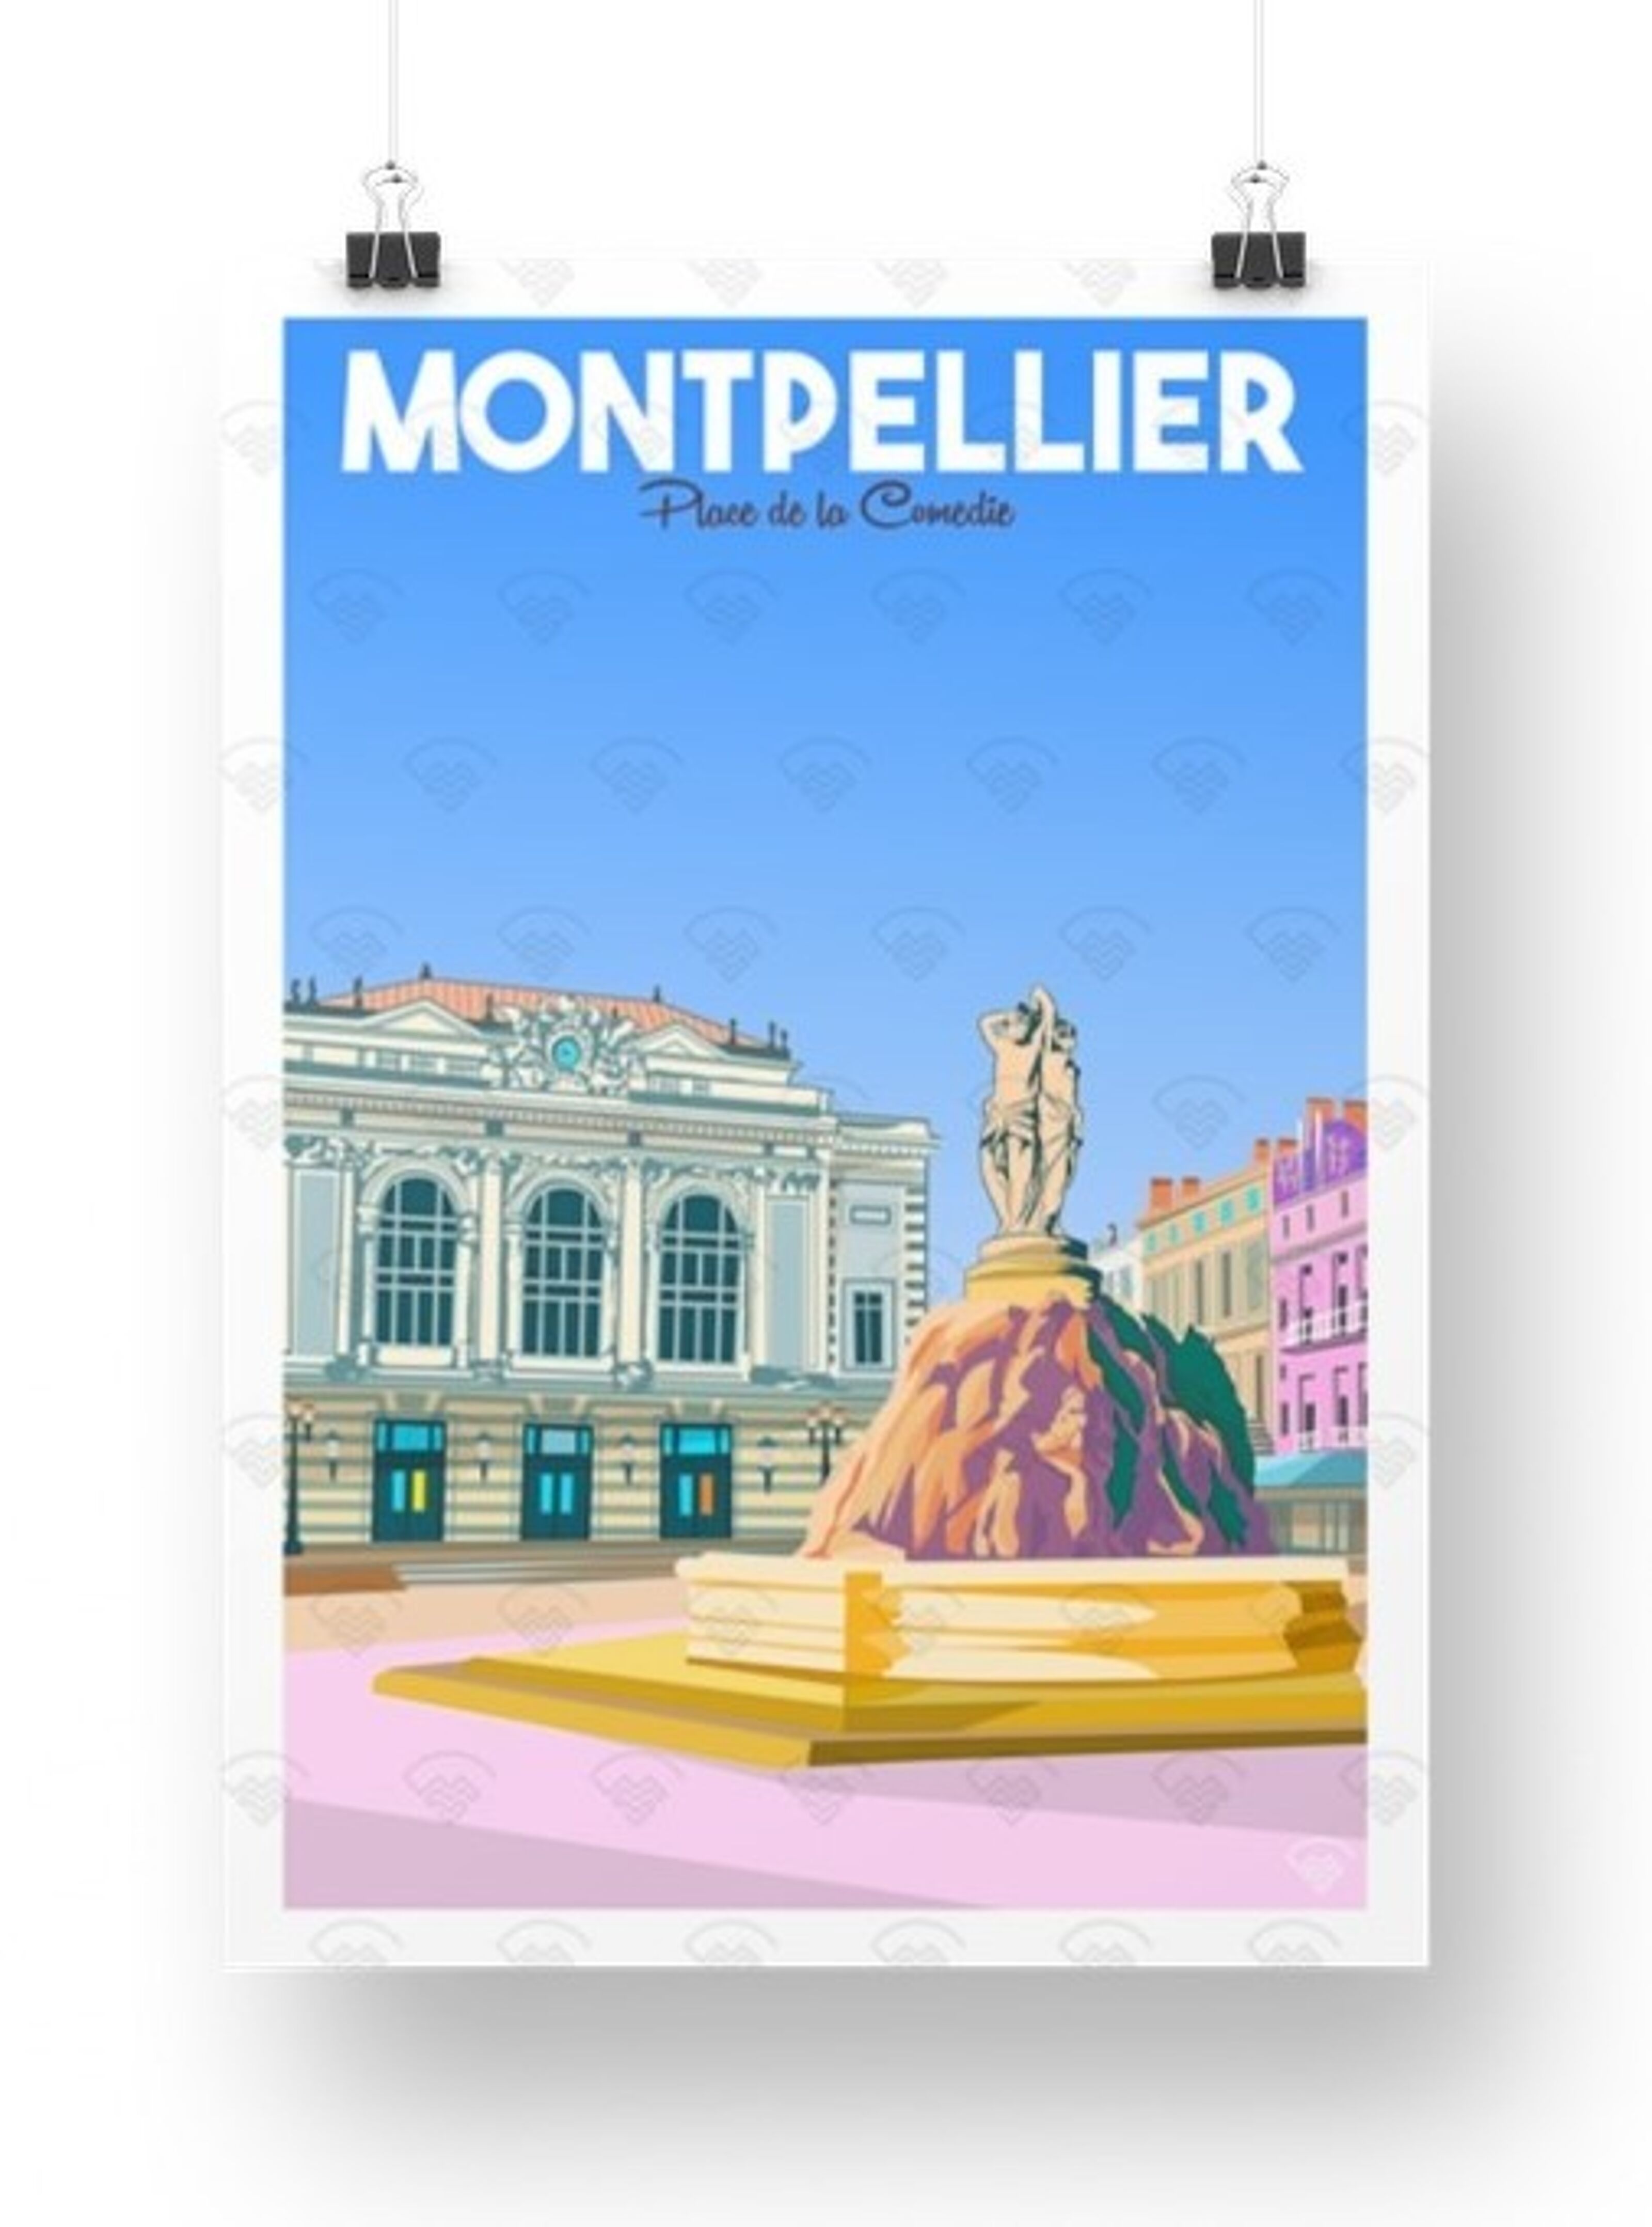 Affiche Maison Landolfi - Marseille - Malmousque